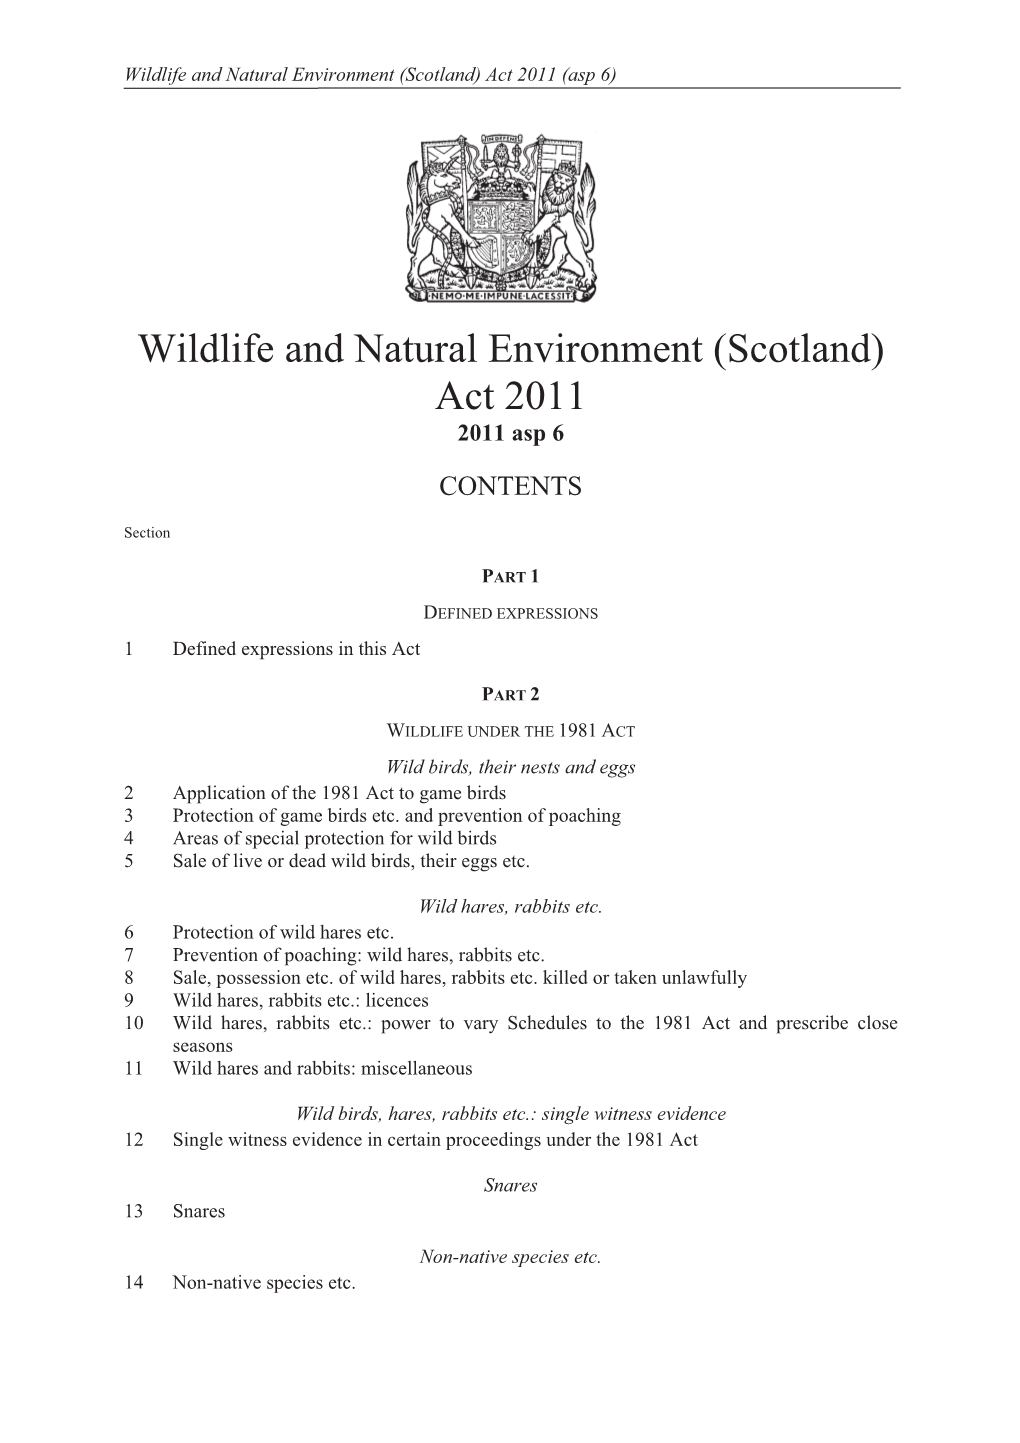 Wildlife and Natural Environment (Scotland) Act 2011 (Asp 6)